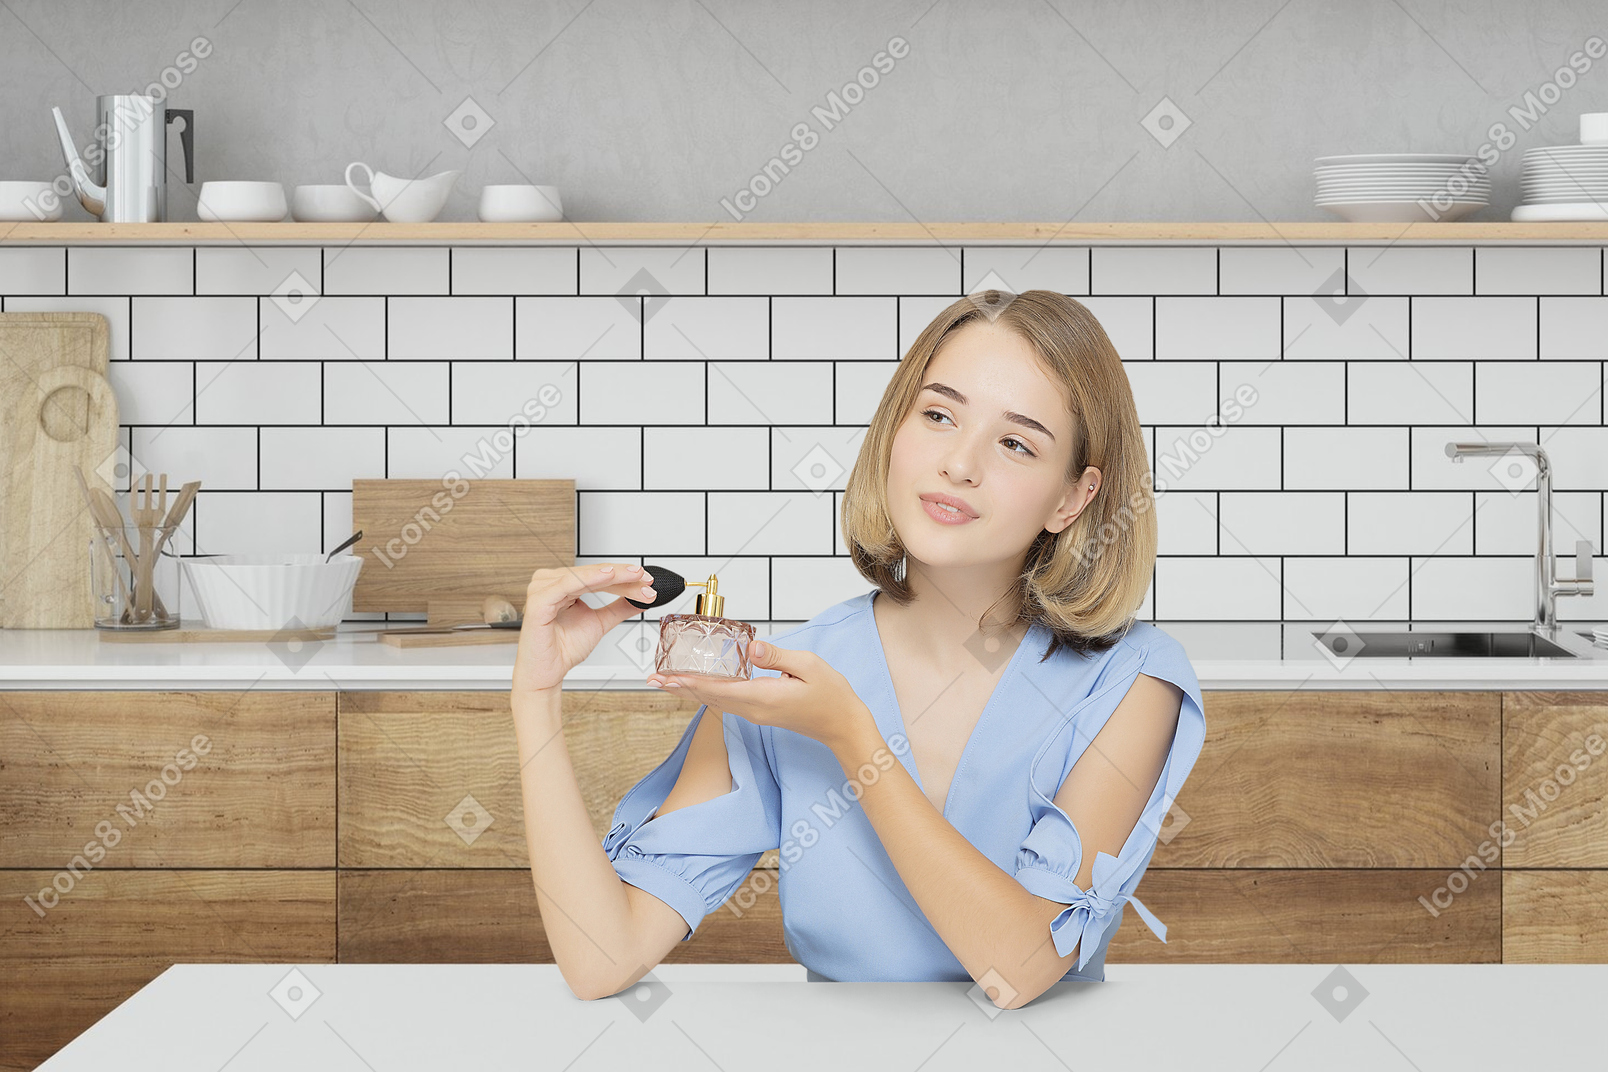 Junge frau, die in der küche sitzt und eine parfümflasche hält